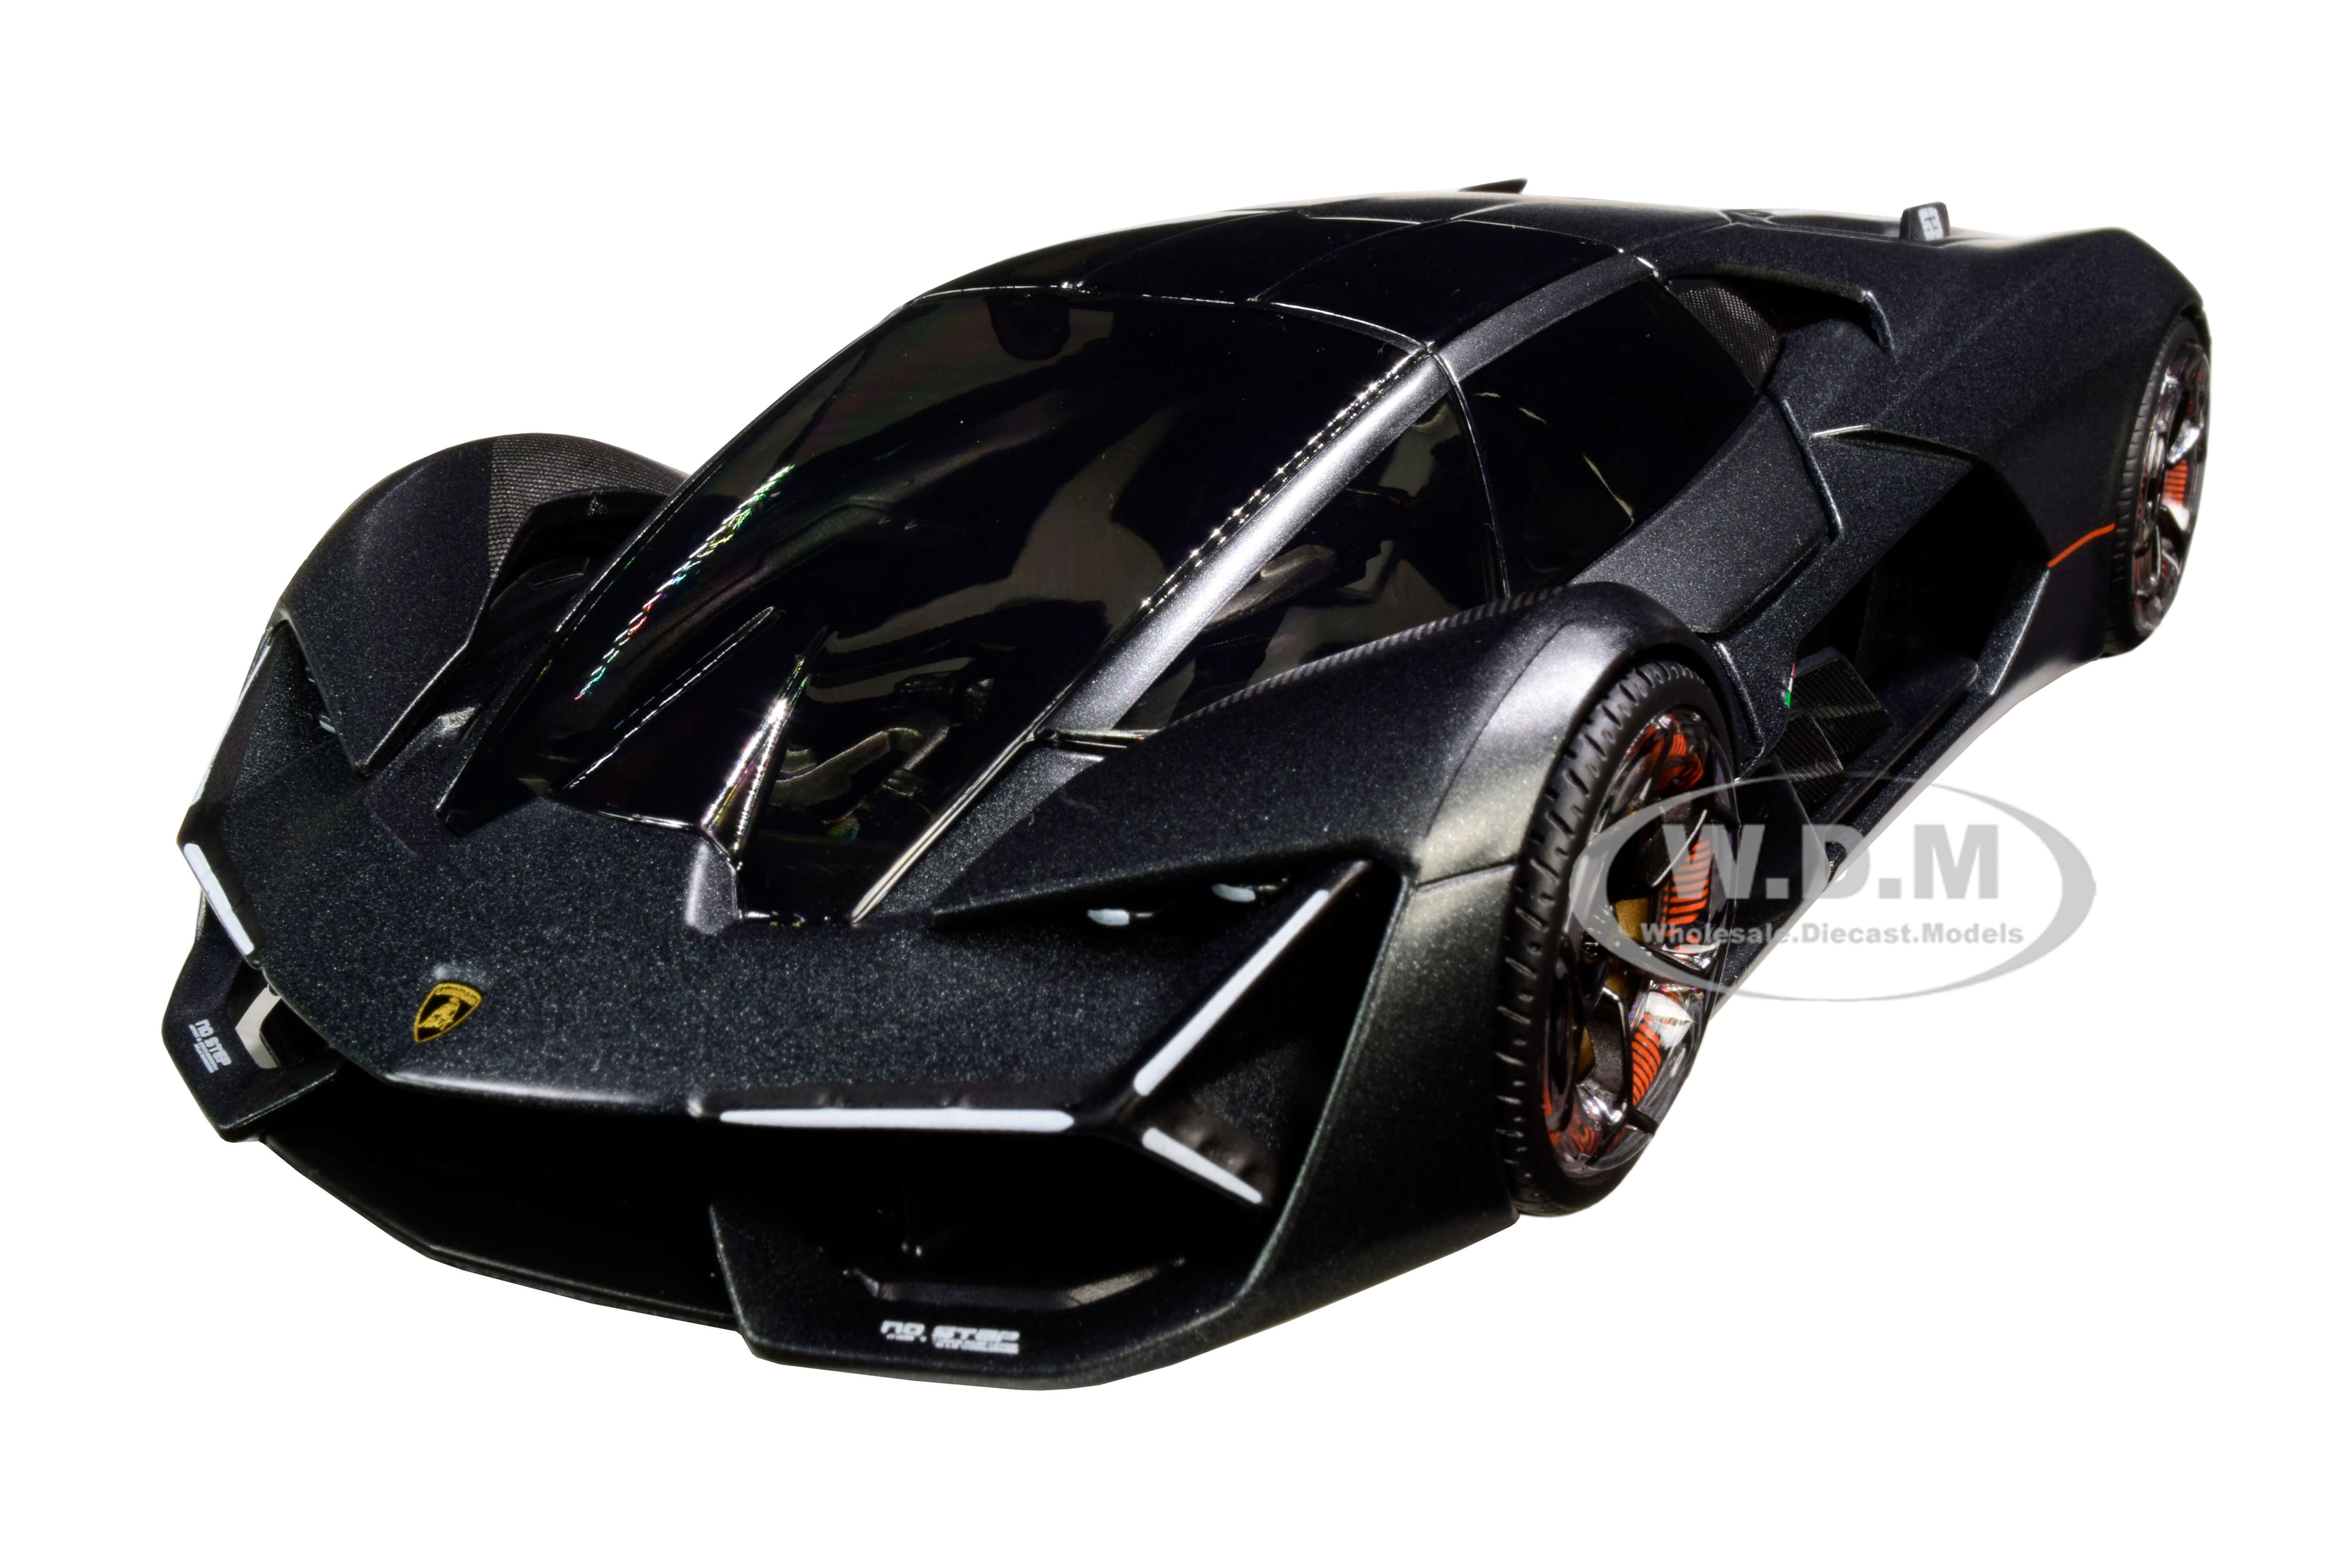 Lamborghini Terzo Millennio Dark Gray Metallic with Black Top and Carbon Accents 1/24 Diecast Model Car by Bburago